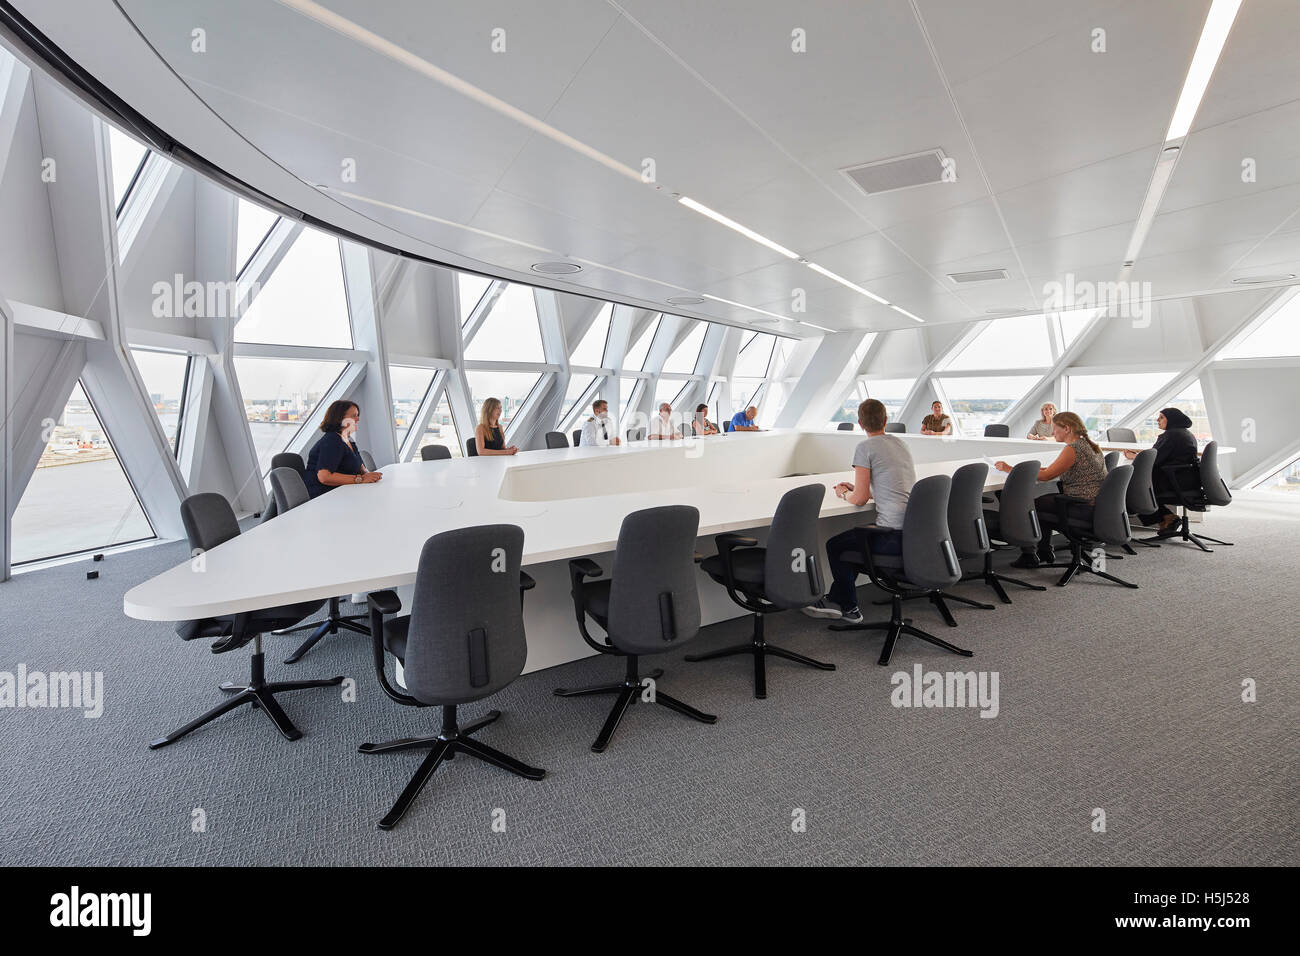 Tagungsraum mit maßgeschneiderten Möbeln. Portweinhaus, Antwerpen, Belgien. Architekt: Zaha Hadid Architects, 2016. Stockfoto